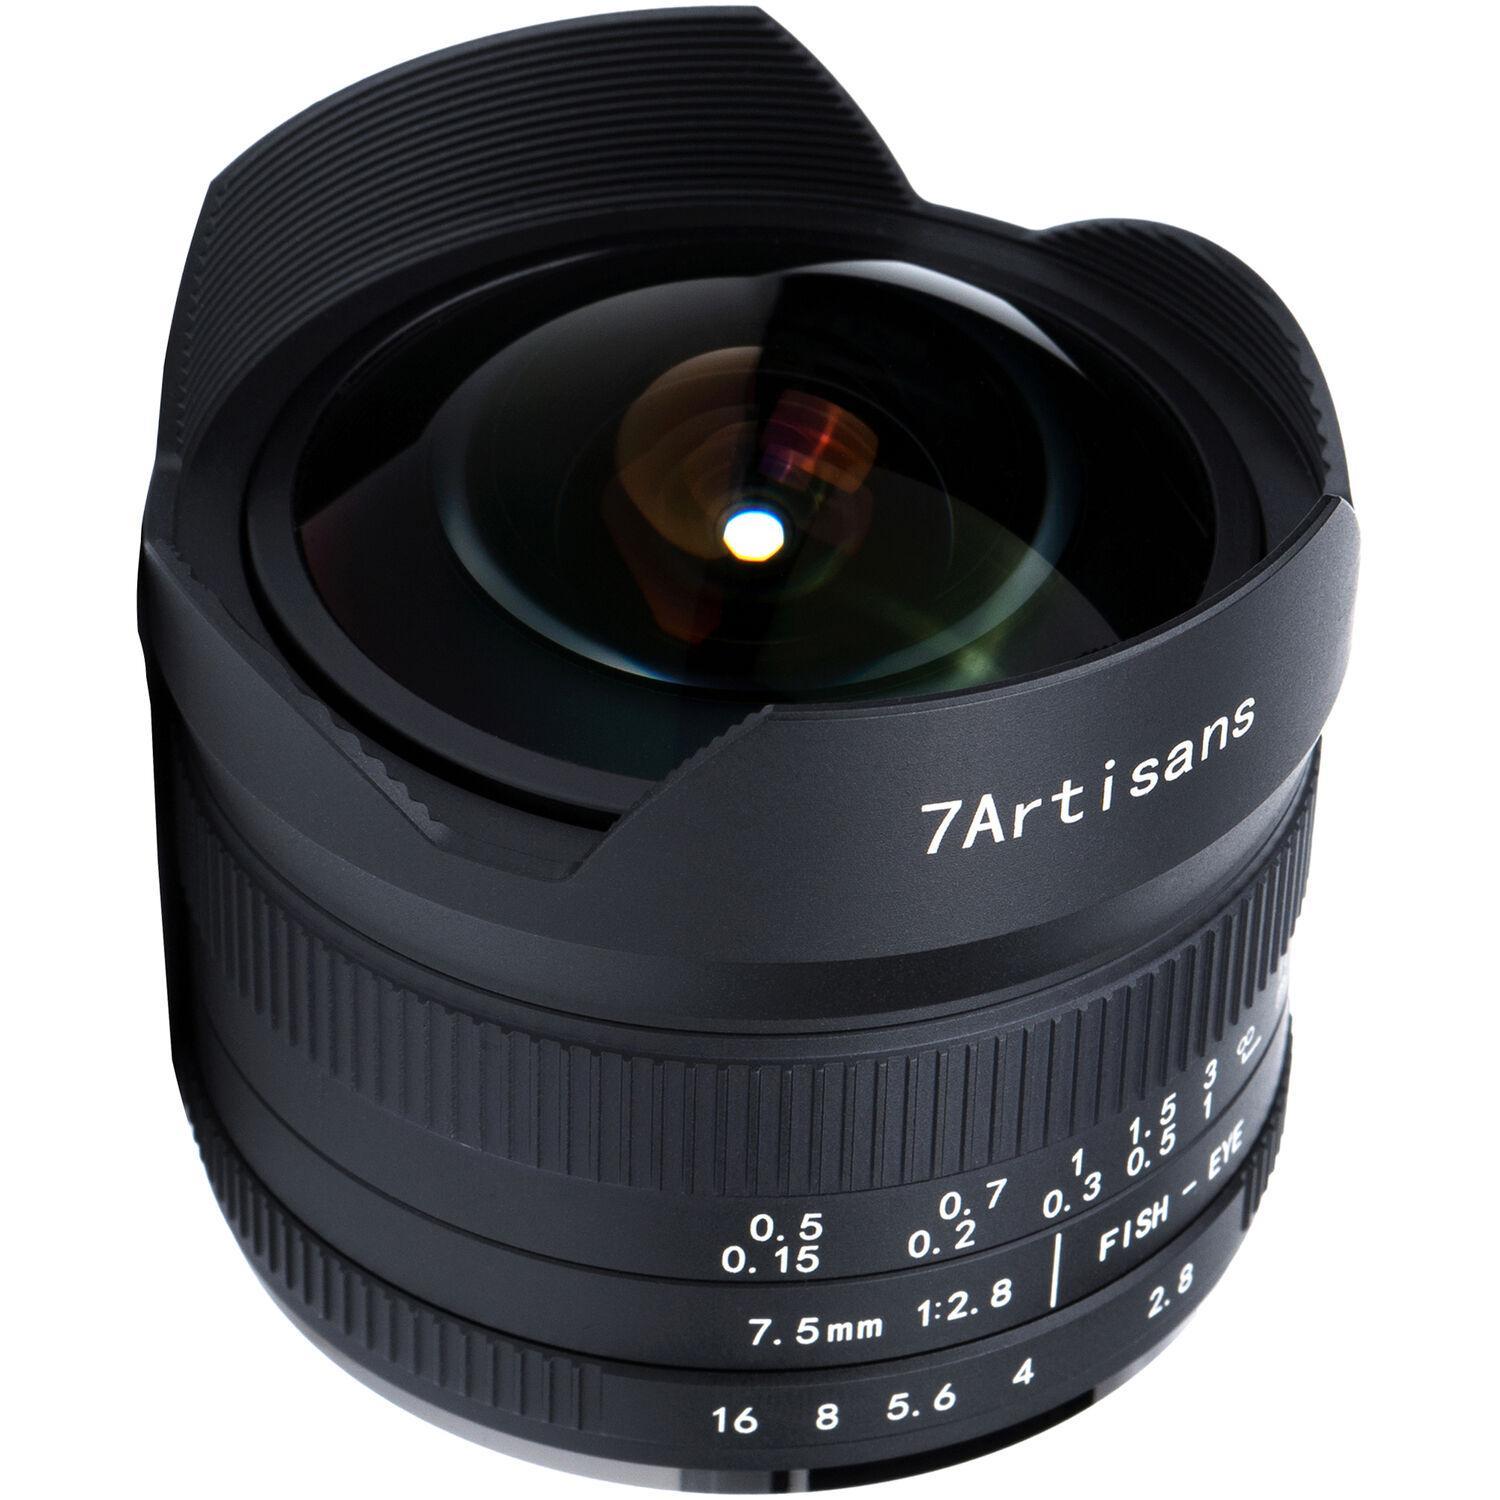 7artisans 7.5mm f/2.8 to f/22 II Lens for Sony (E Mount)